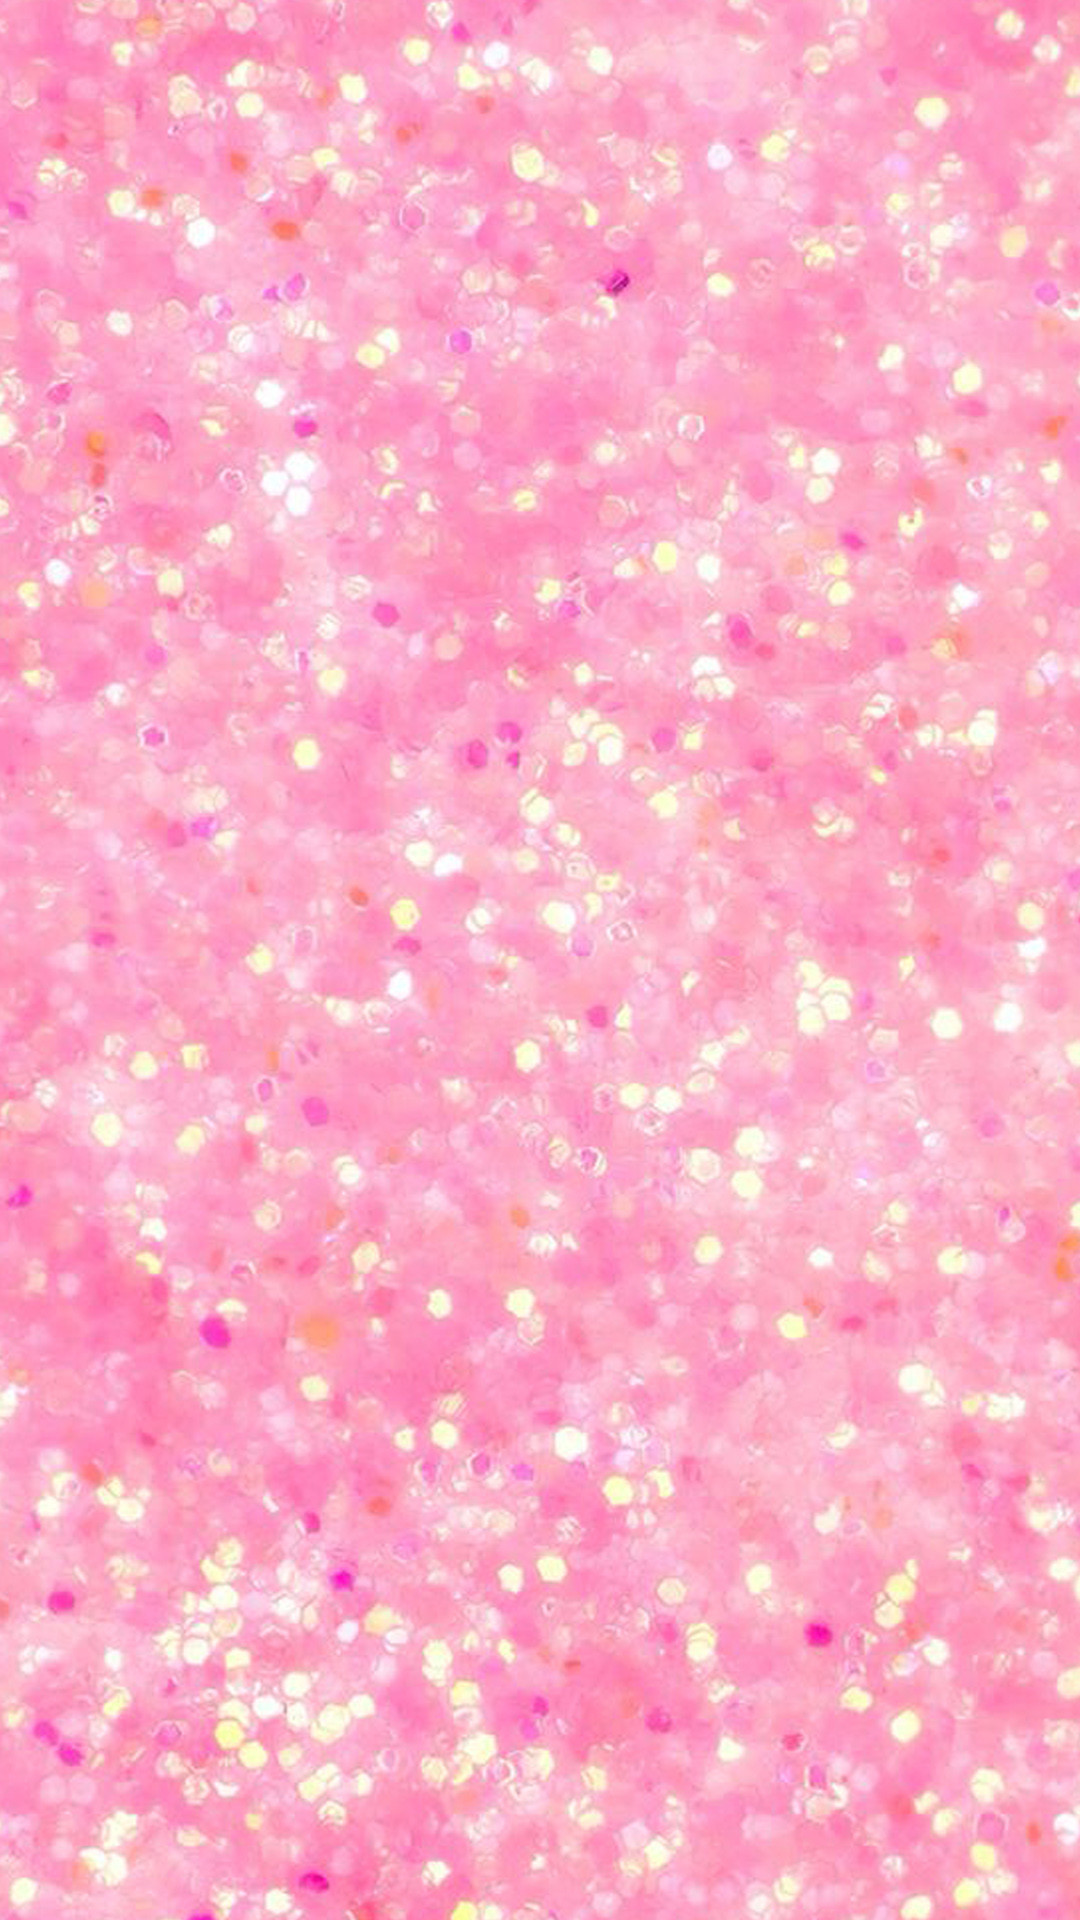 1080x1920 Pink iPhone Wallpapers. Pink_iPhone_wallpaper_5